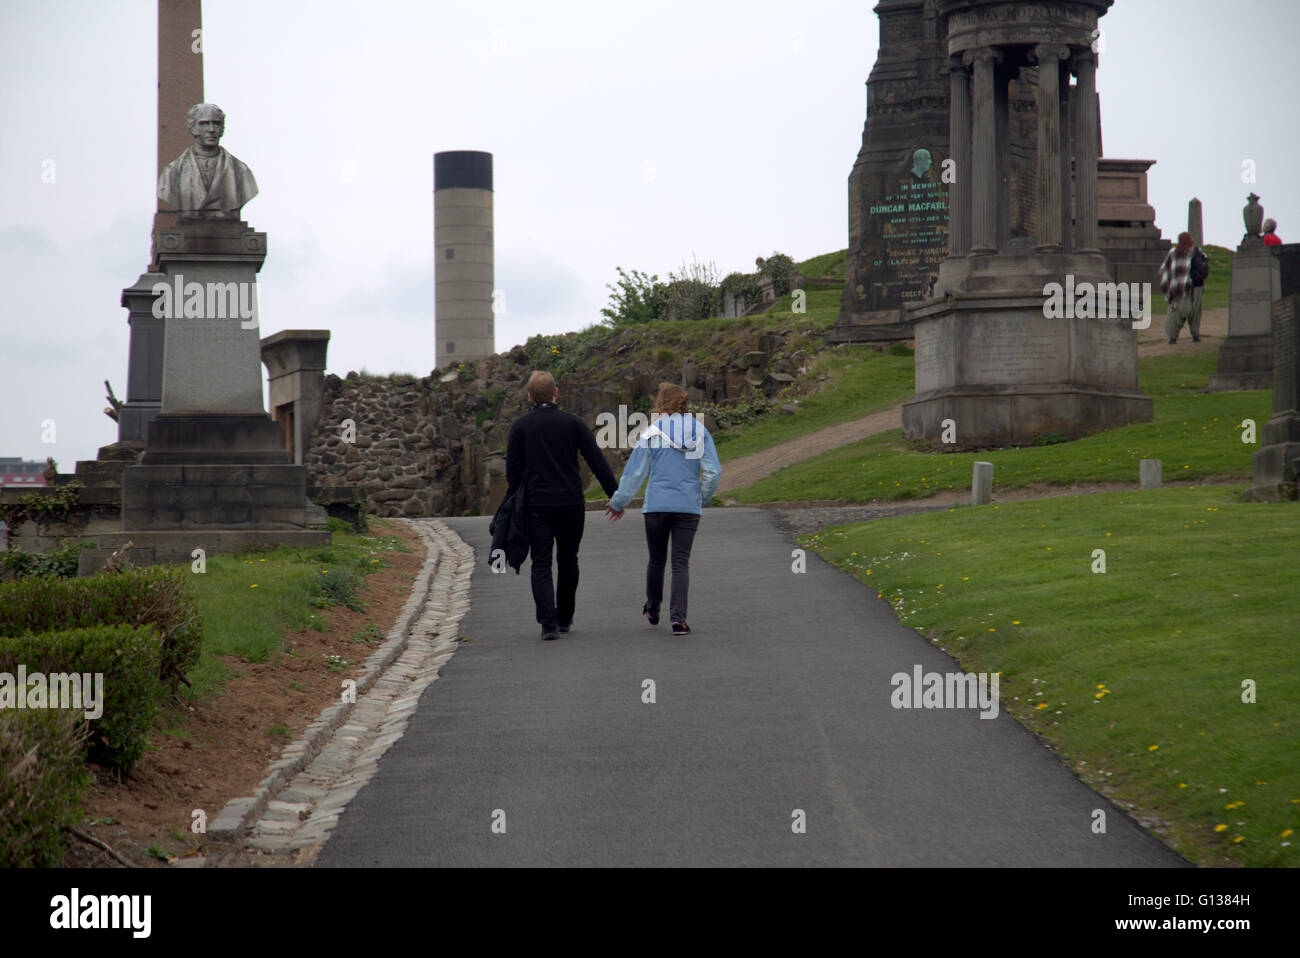 L'homme et la femme marcher main dans la main se distingue respectivement en face de pierre dans la nécropole de Glasgow, Ecosse, Royaume-Uni Banque D'Images